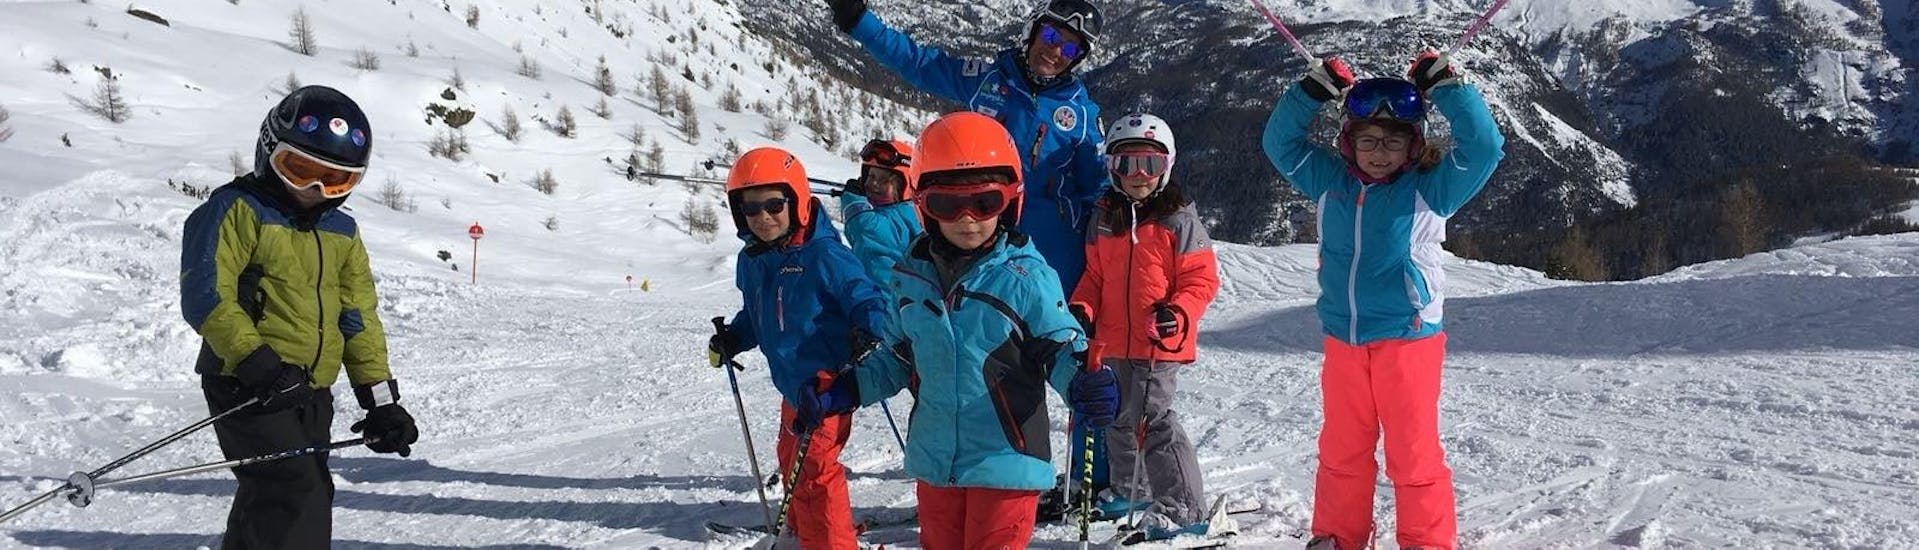 Kinder haben Spaß beim Kinder-Skikurs (6-12 Jahre) der Enjoyski School Valmalenco- für alle Levels.